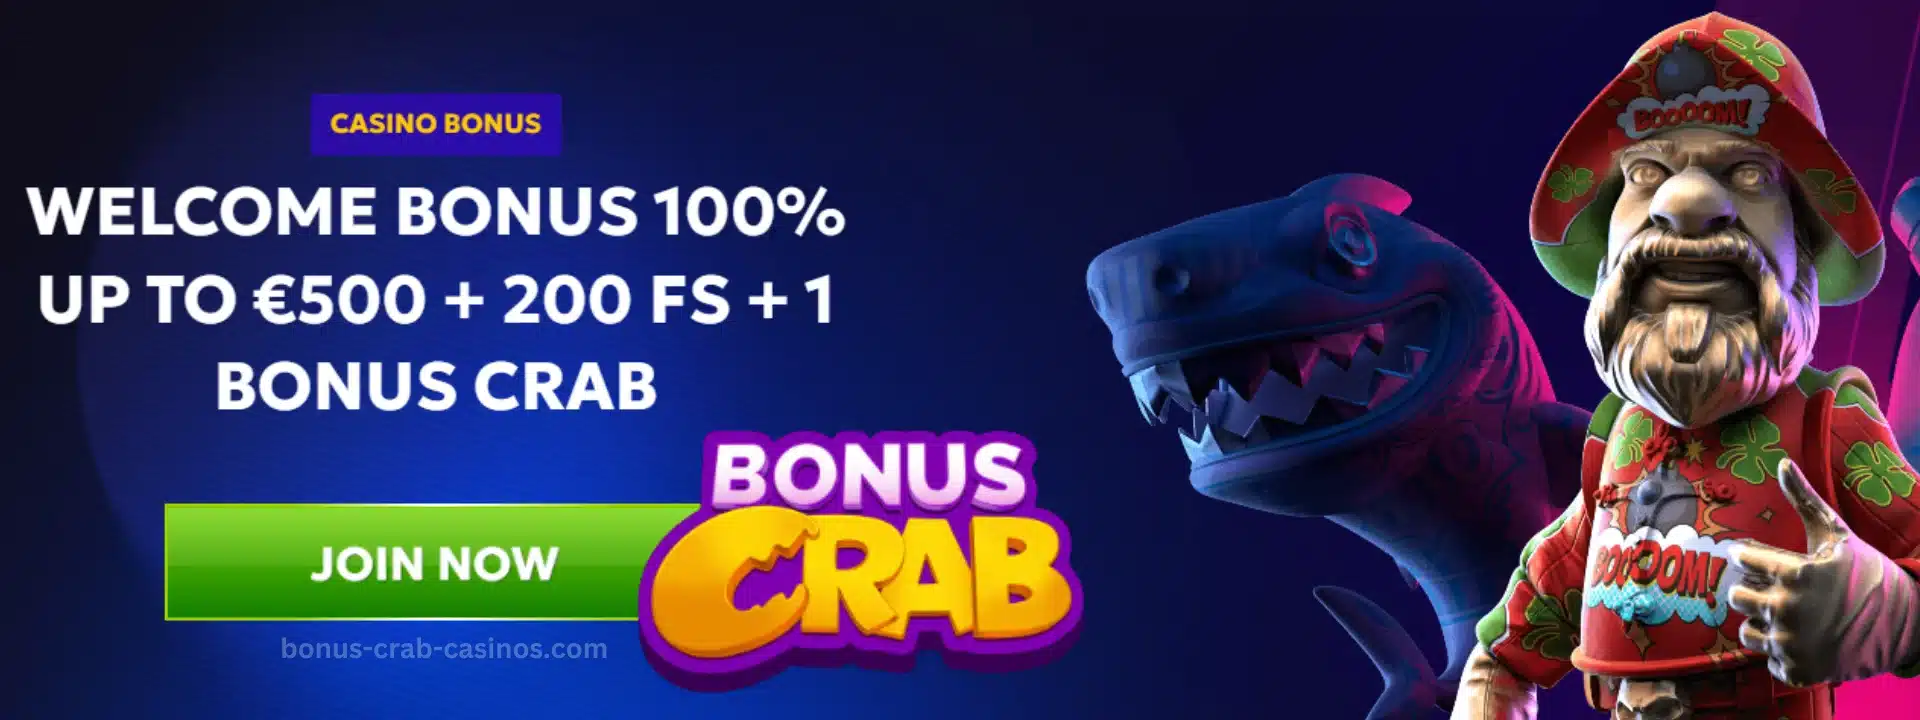 RTbet Casino Bonus Crab Casino Bonus